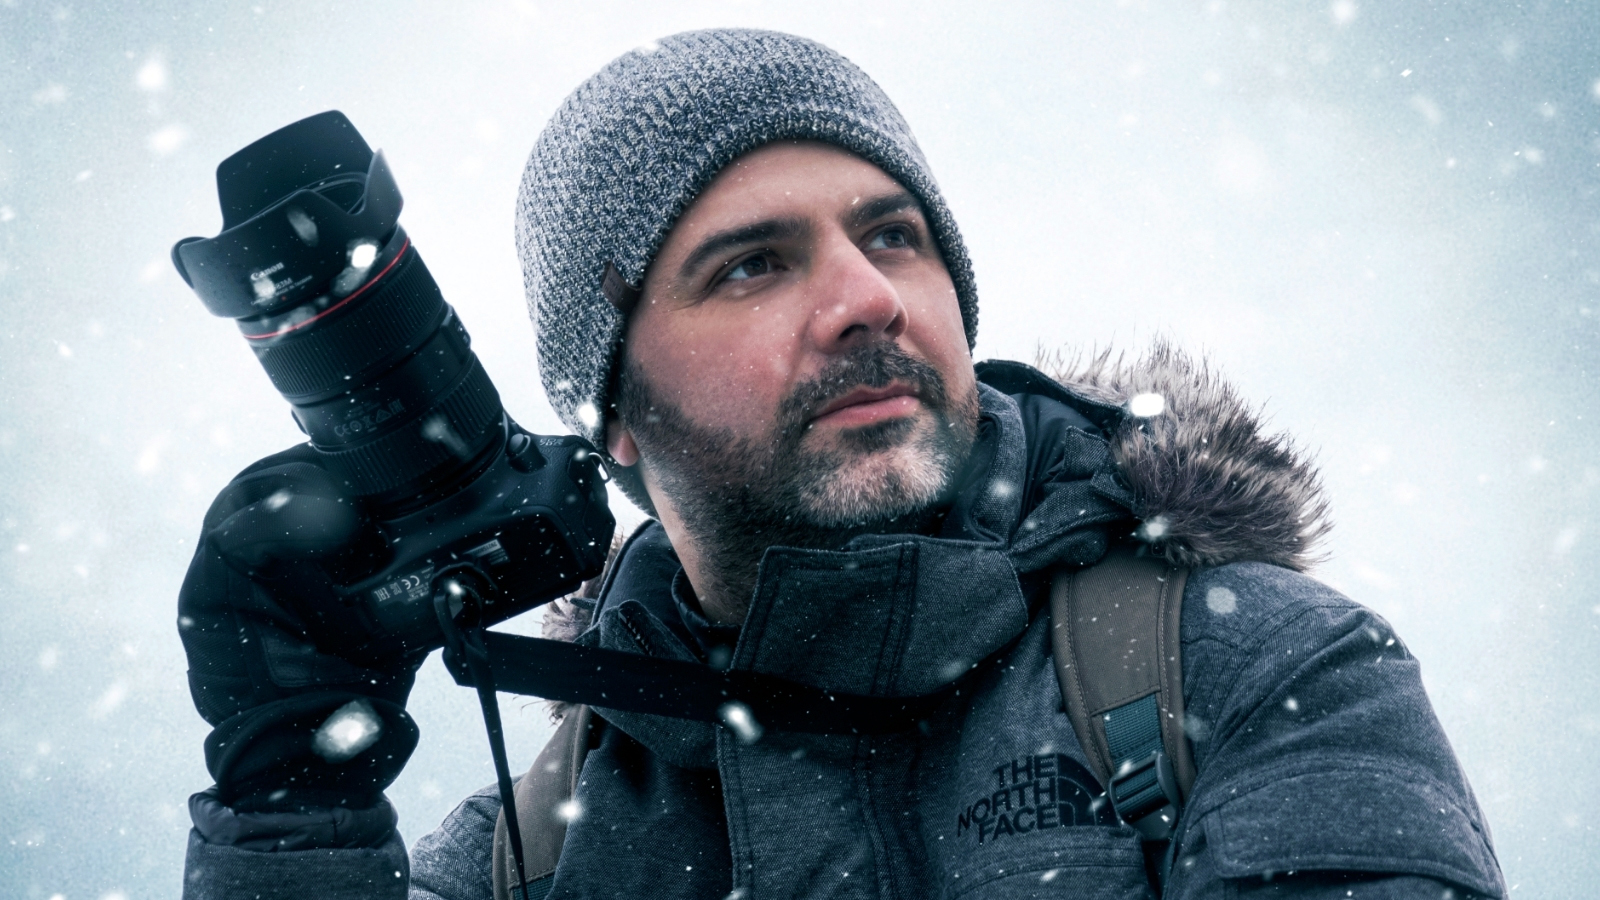 Gondolatébresztő tippek és hasznos tanácsok téli képek készítéséhez - Nextfoto